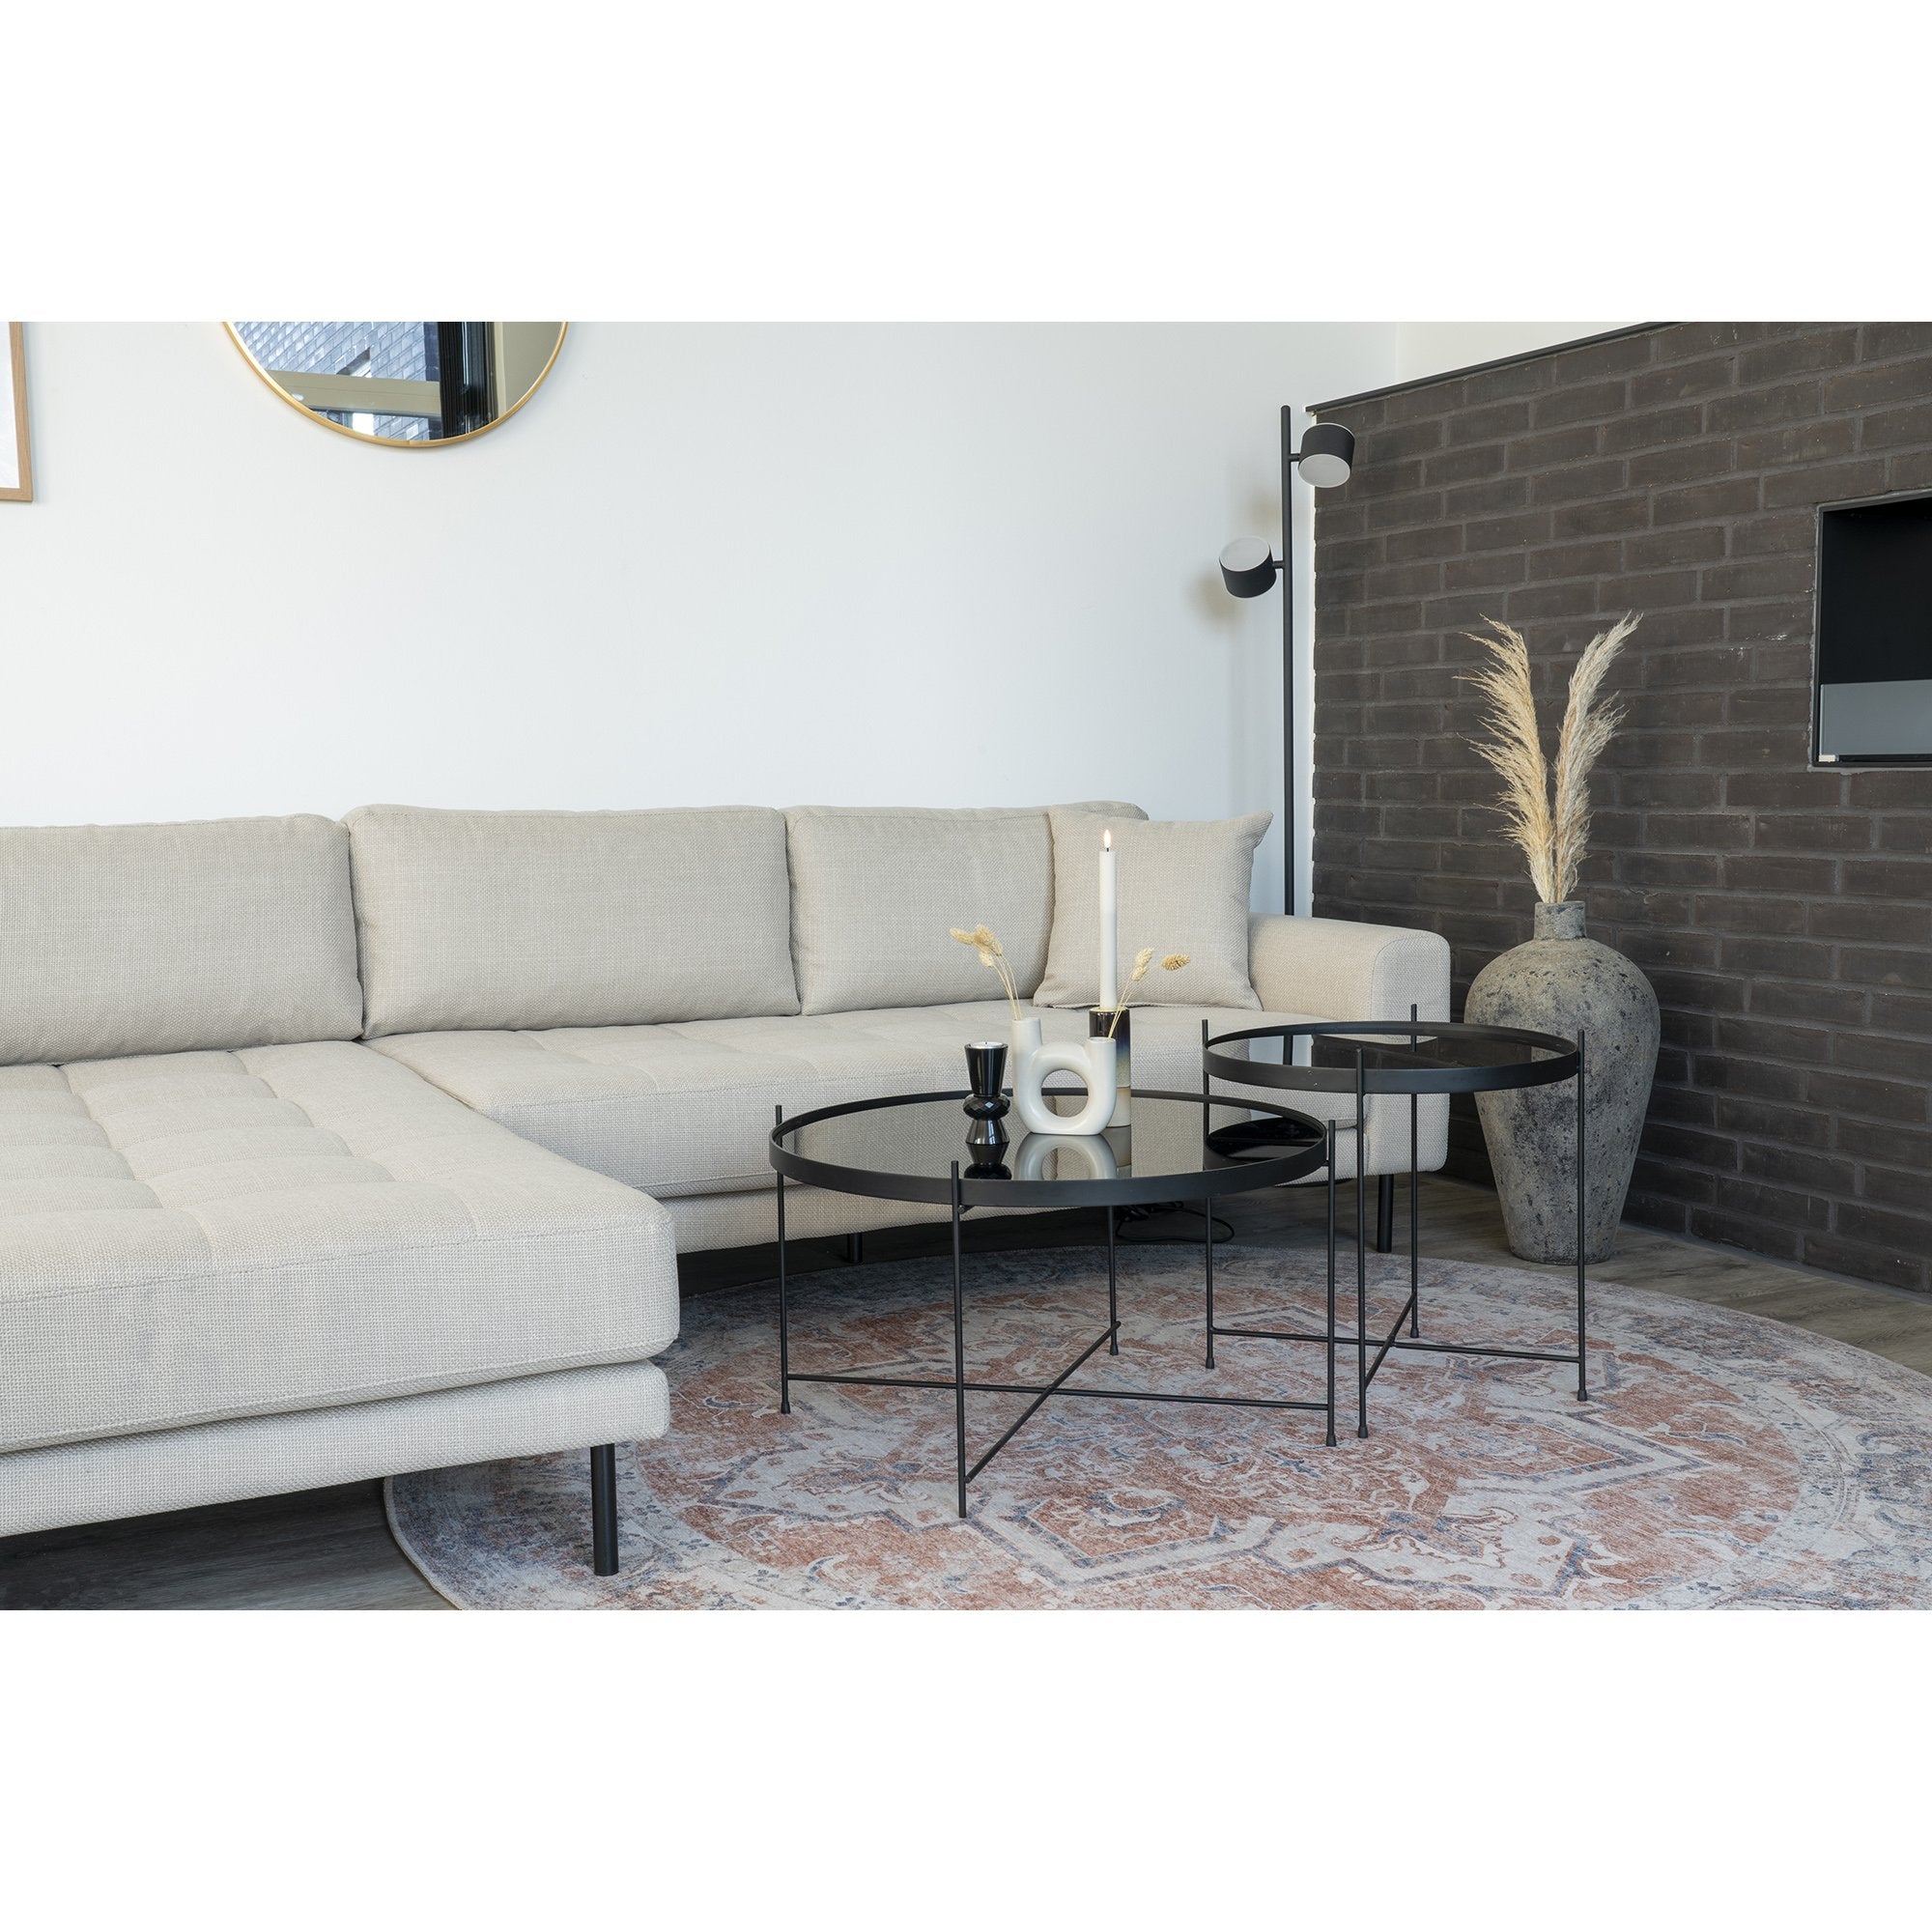 Lido Lounge Sofa - Lounge Sofa, Venstrevendt I Beige Med Fire Puder Og Sorte Stål Ben, Hn1025 ⎮ 5713917018819 ⎮ 1301495 